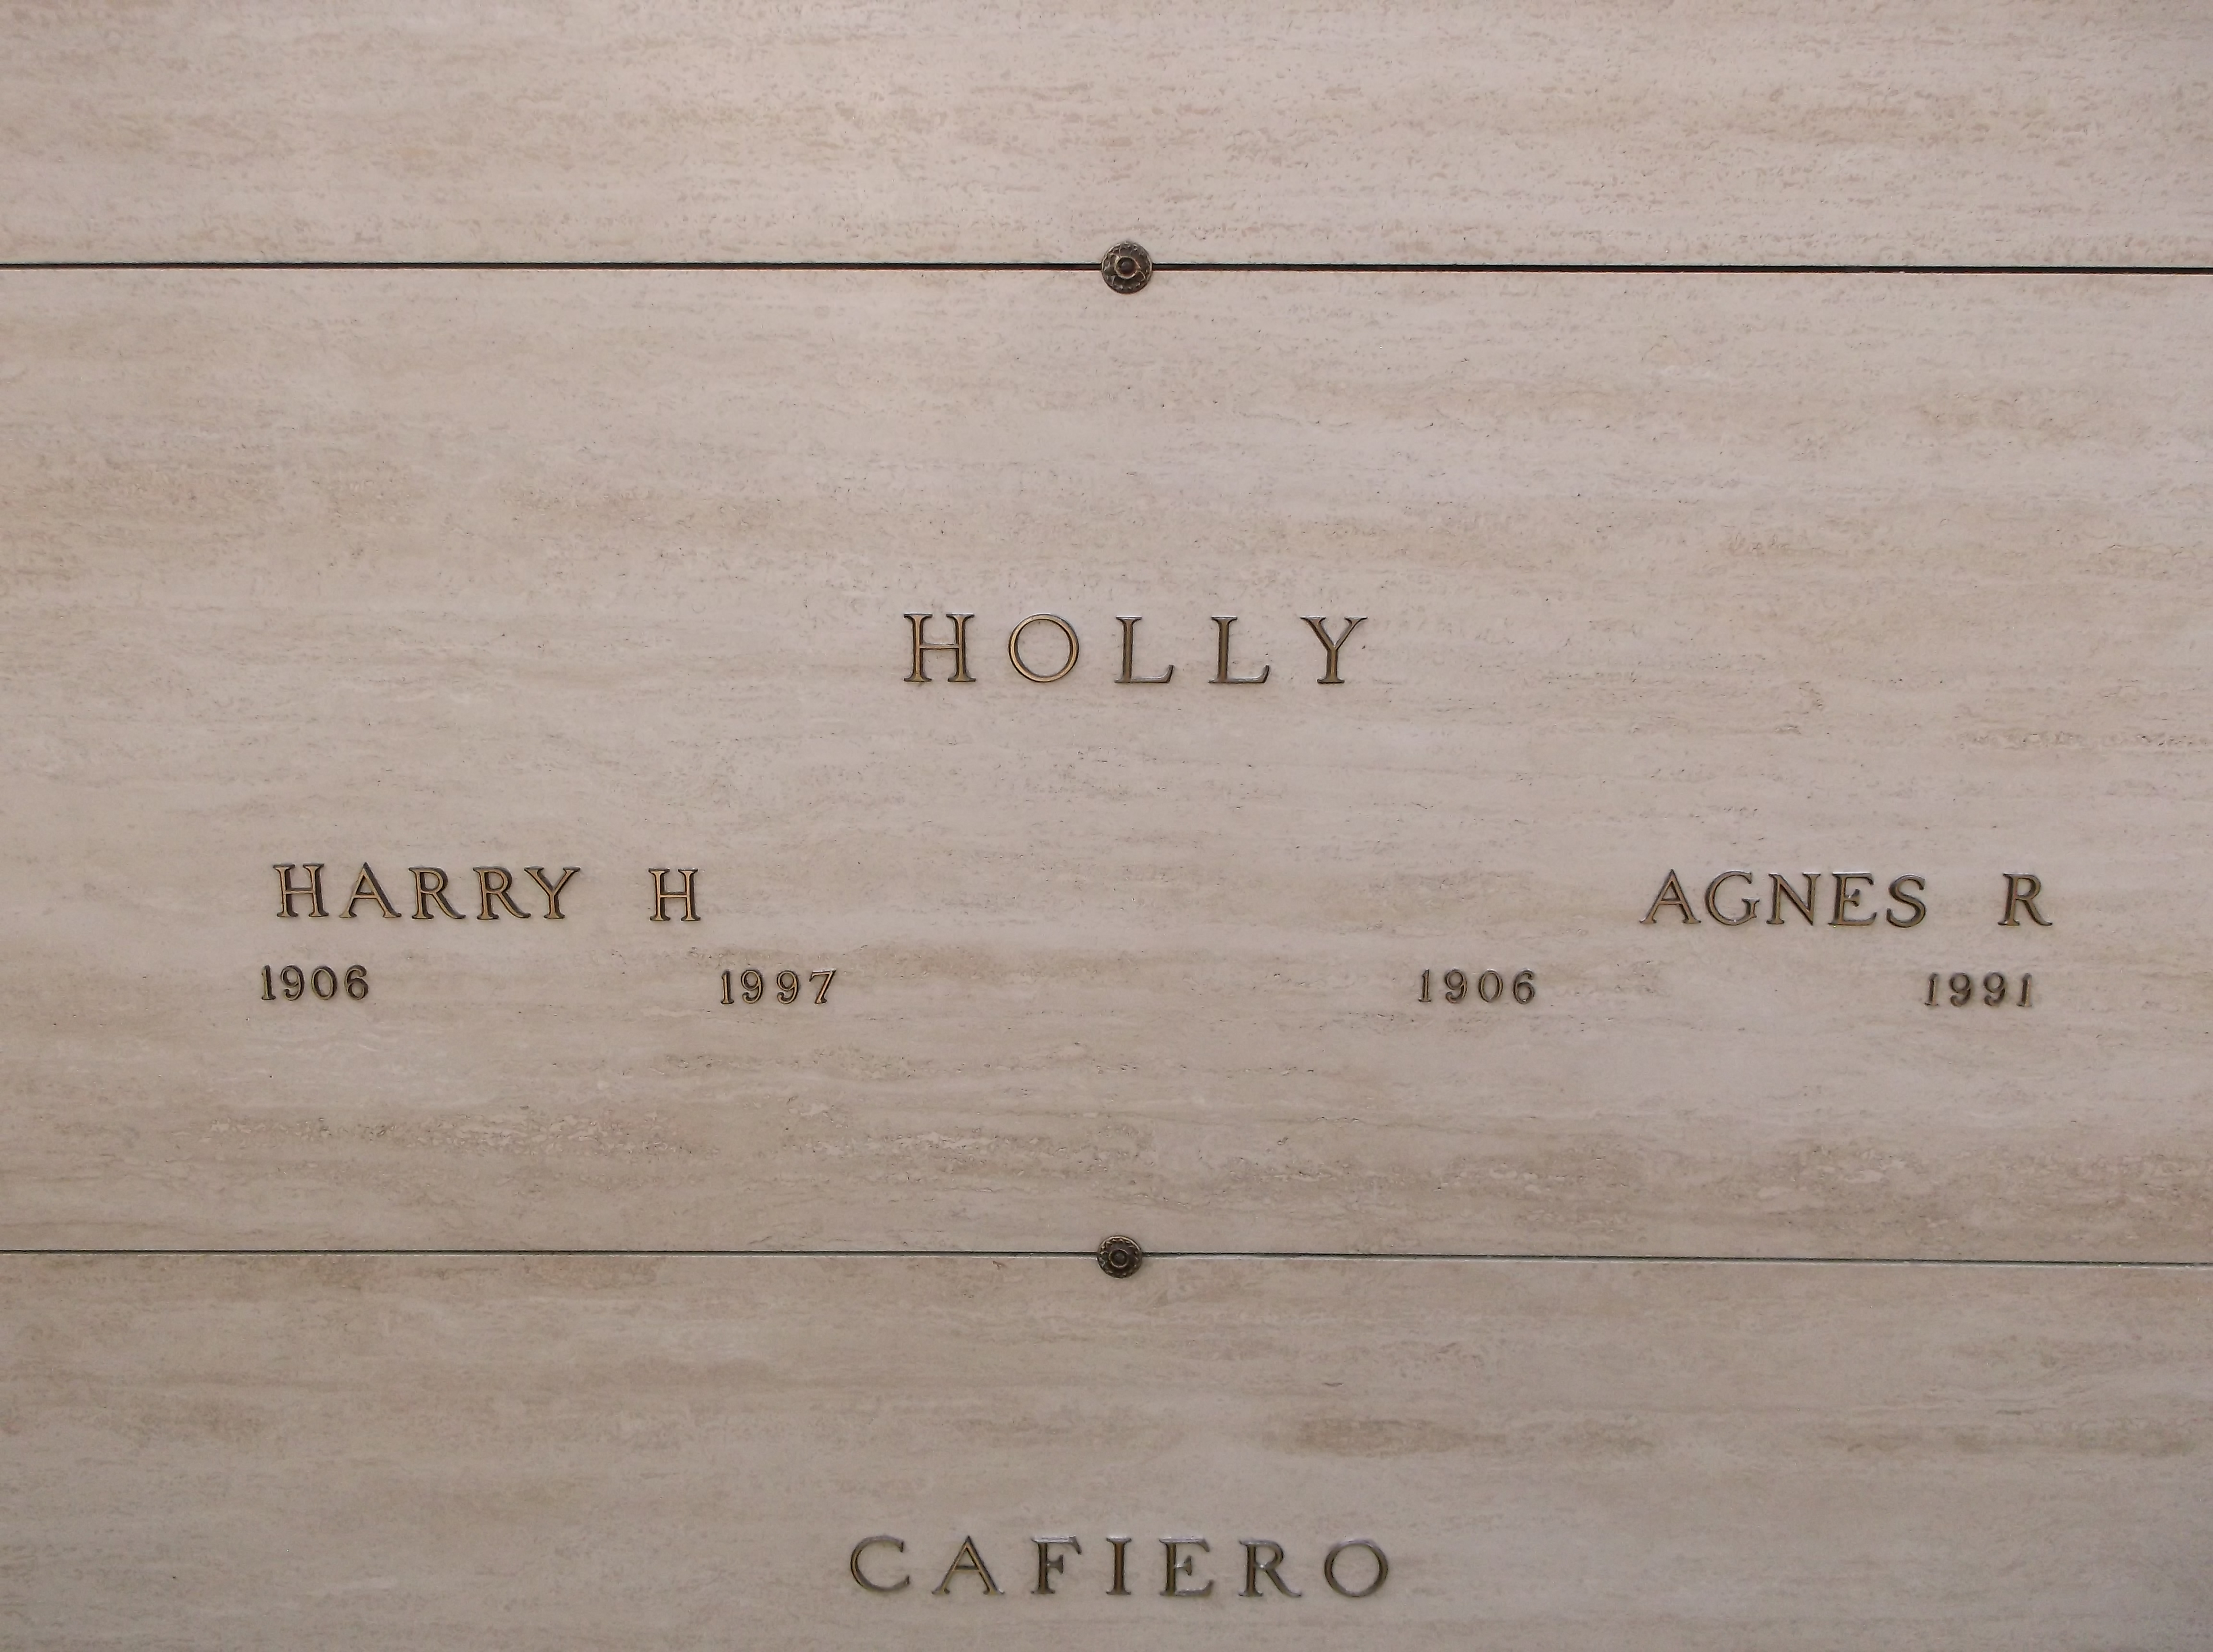 Harry H Holly